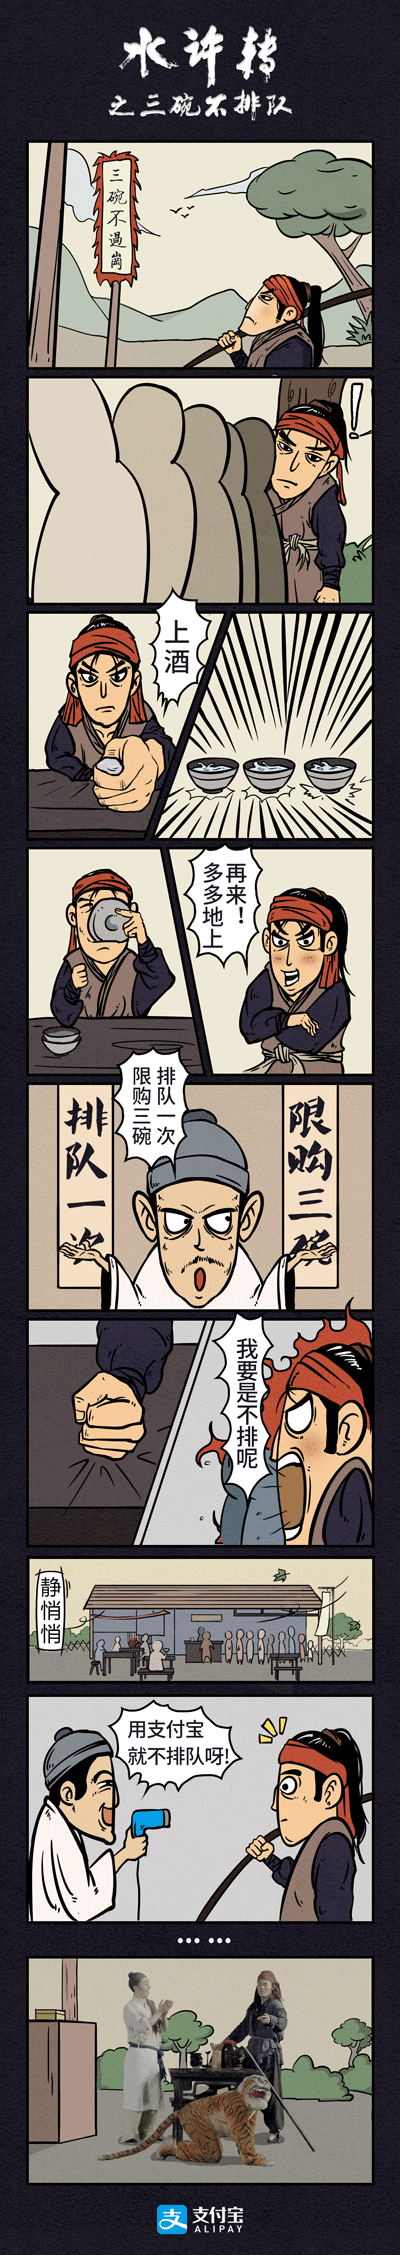 水浒传海报 漫画       